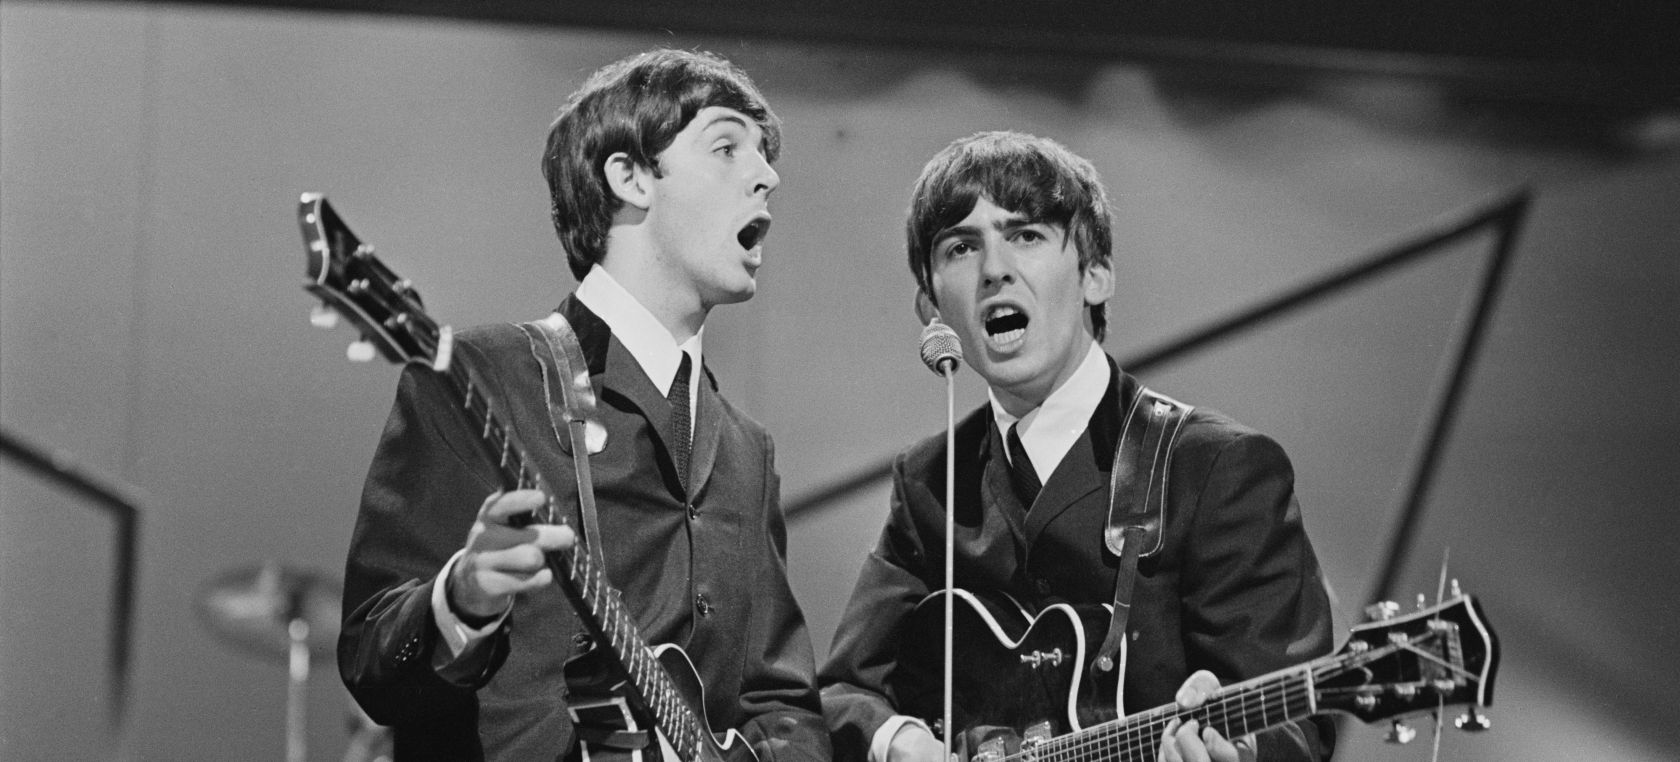 Paul McCartney recuerda a George Harrison a 20 años de su muerte: “Extraño mucho a mi amigo”